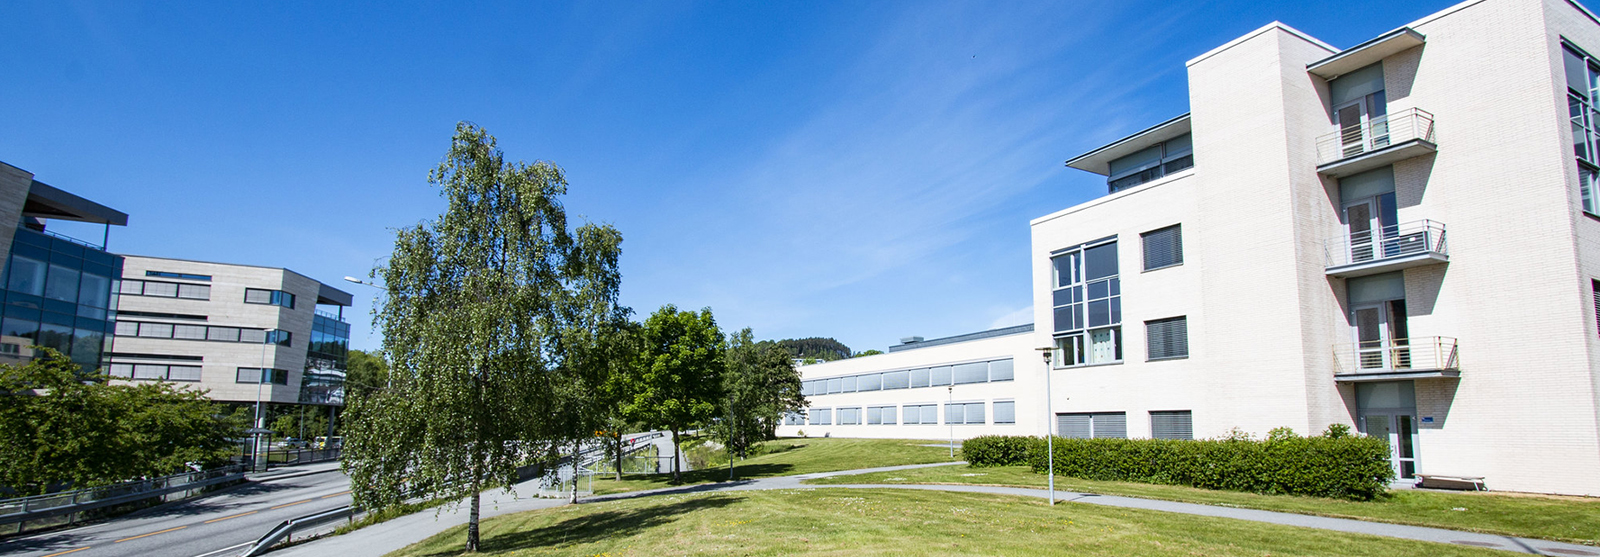   NTNU i Ålesund og NMK, kort vei fra utdanning til næringsliv. Norges mest næringsnære campus  Foto: Sissel Basso/NTNU